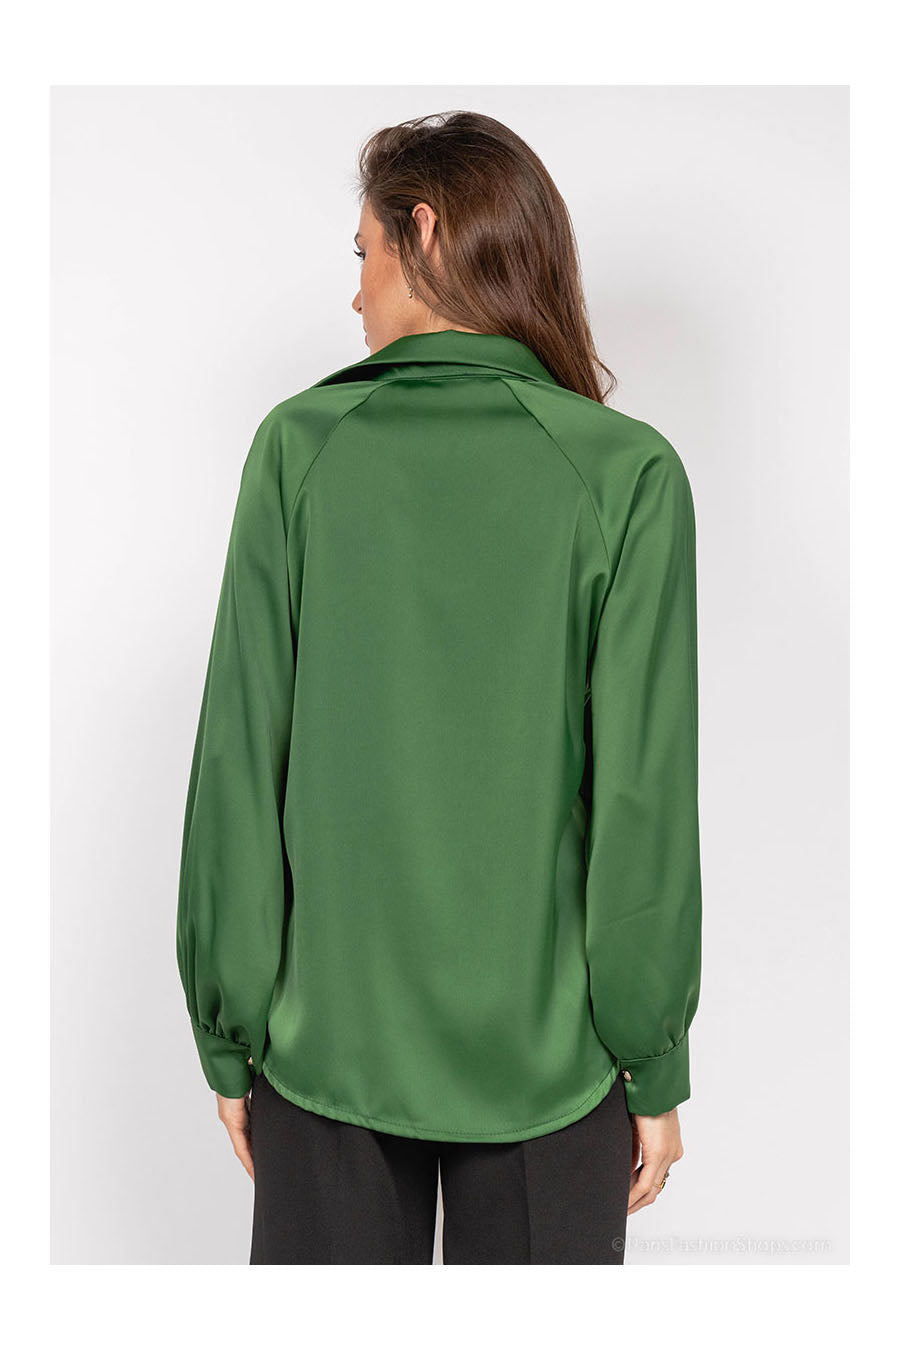 Дамска риза Kailah, Зелен 3